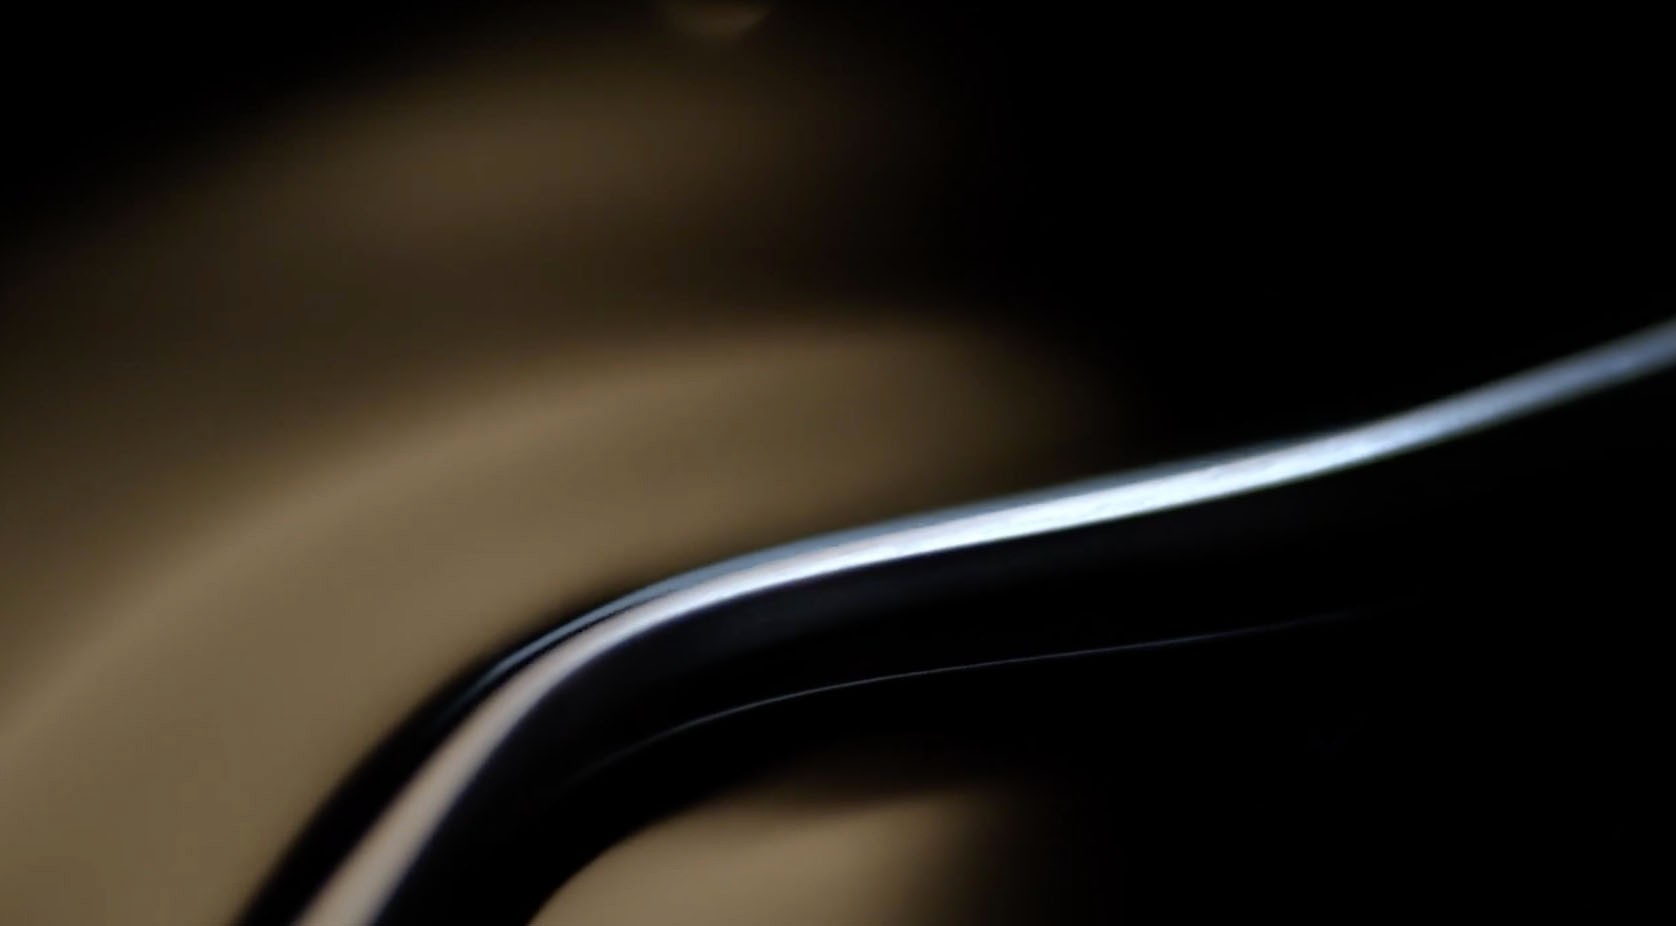 Samsung lanza otro video teaser para Galaxy S6, confirma el diseño totalmente metálico y la pantalla curva